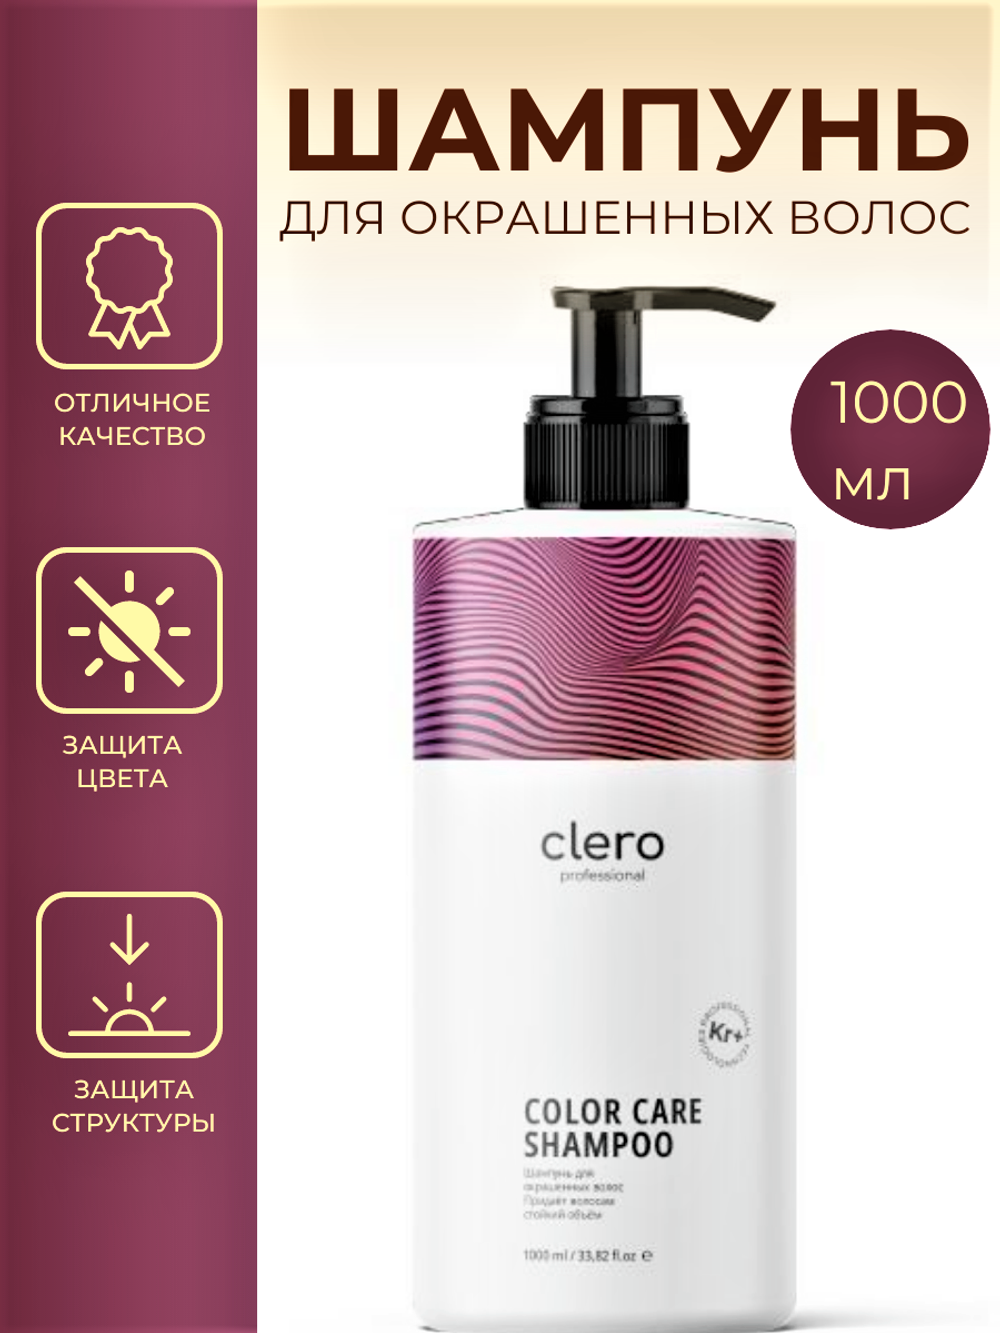 Шампунь для окрашенных волос COLOR CARE CLERO PRO, 1000 мл